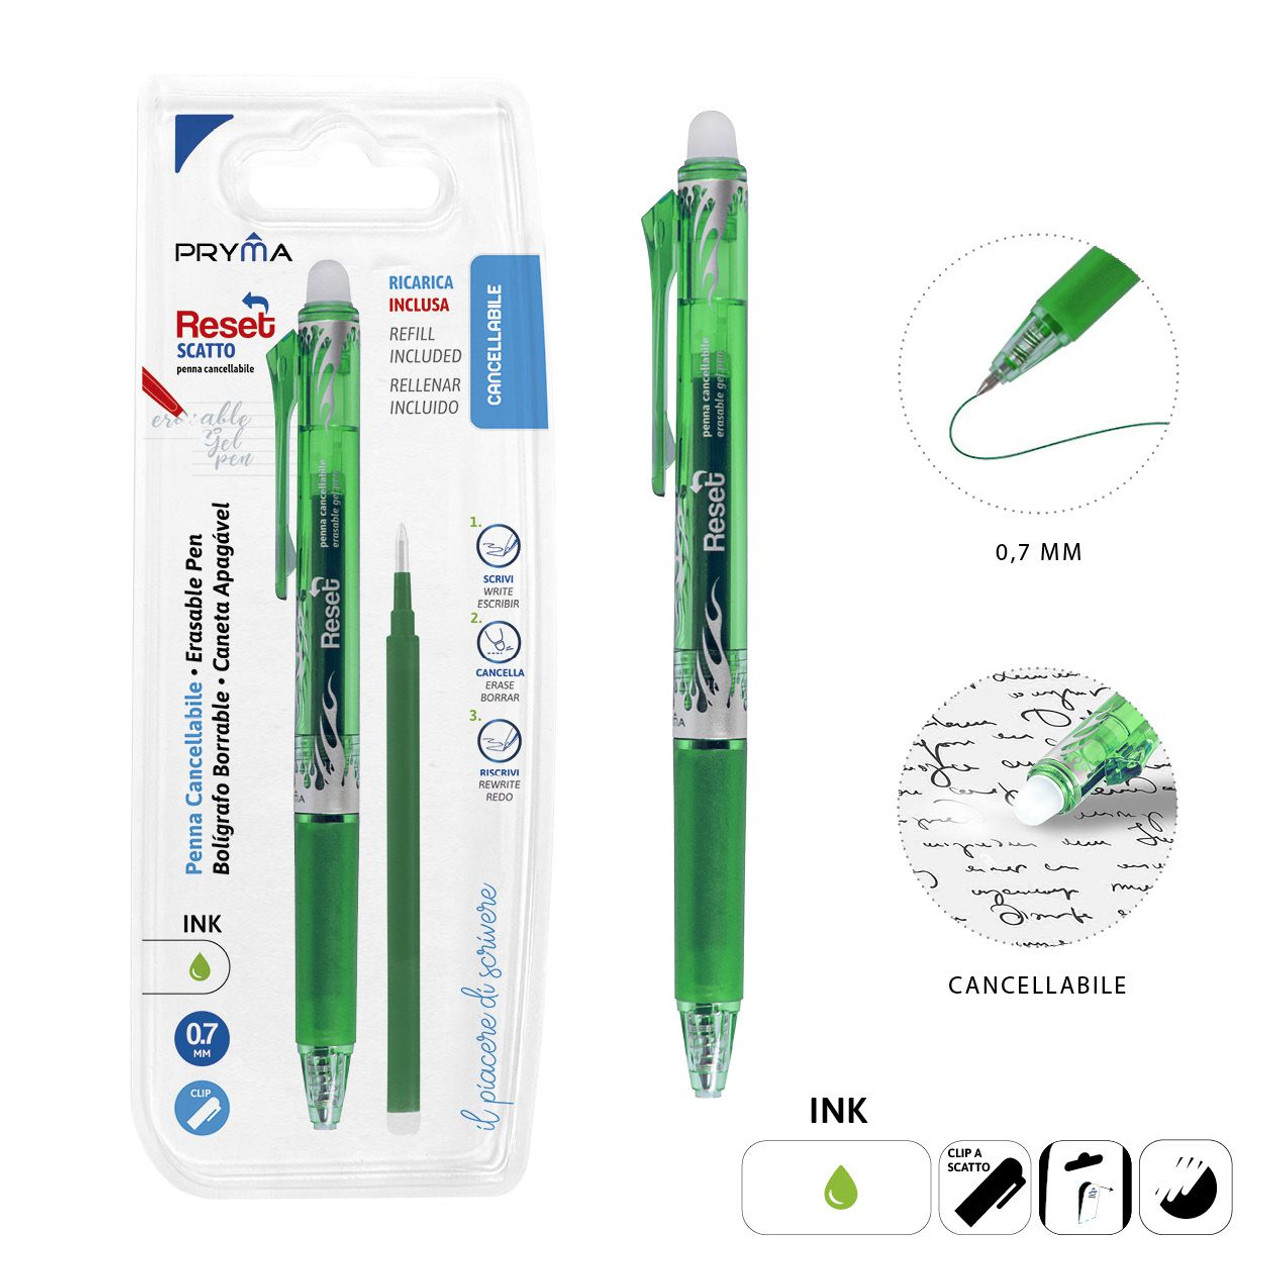 Pryma - Penna Cancellabile Scatto 0.7Mm + Ricarica Verde Bl. - CZ Store